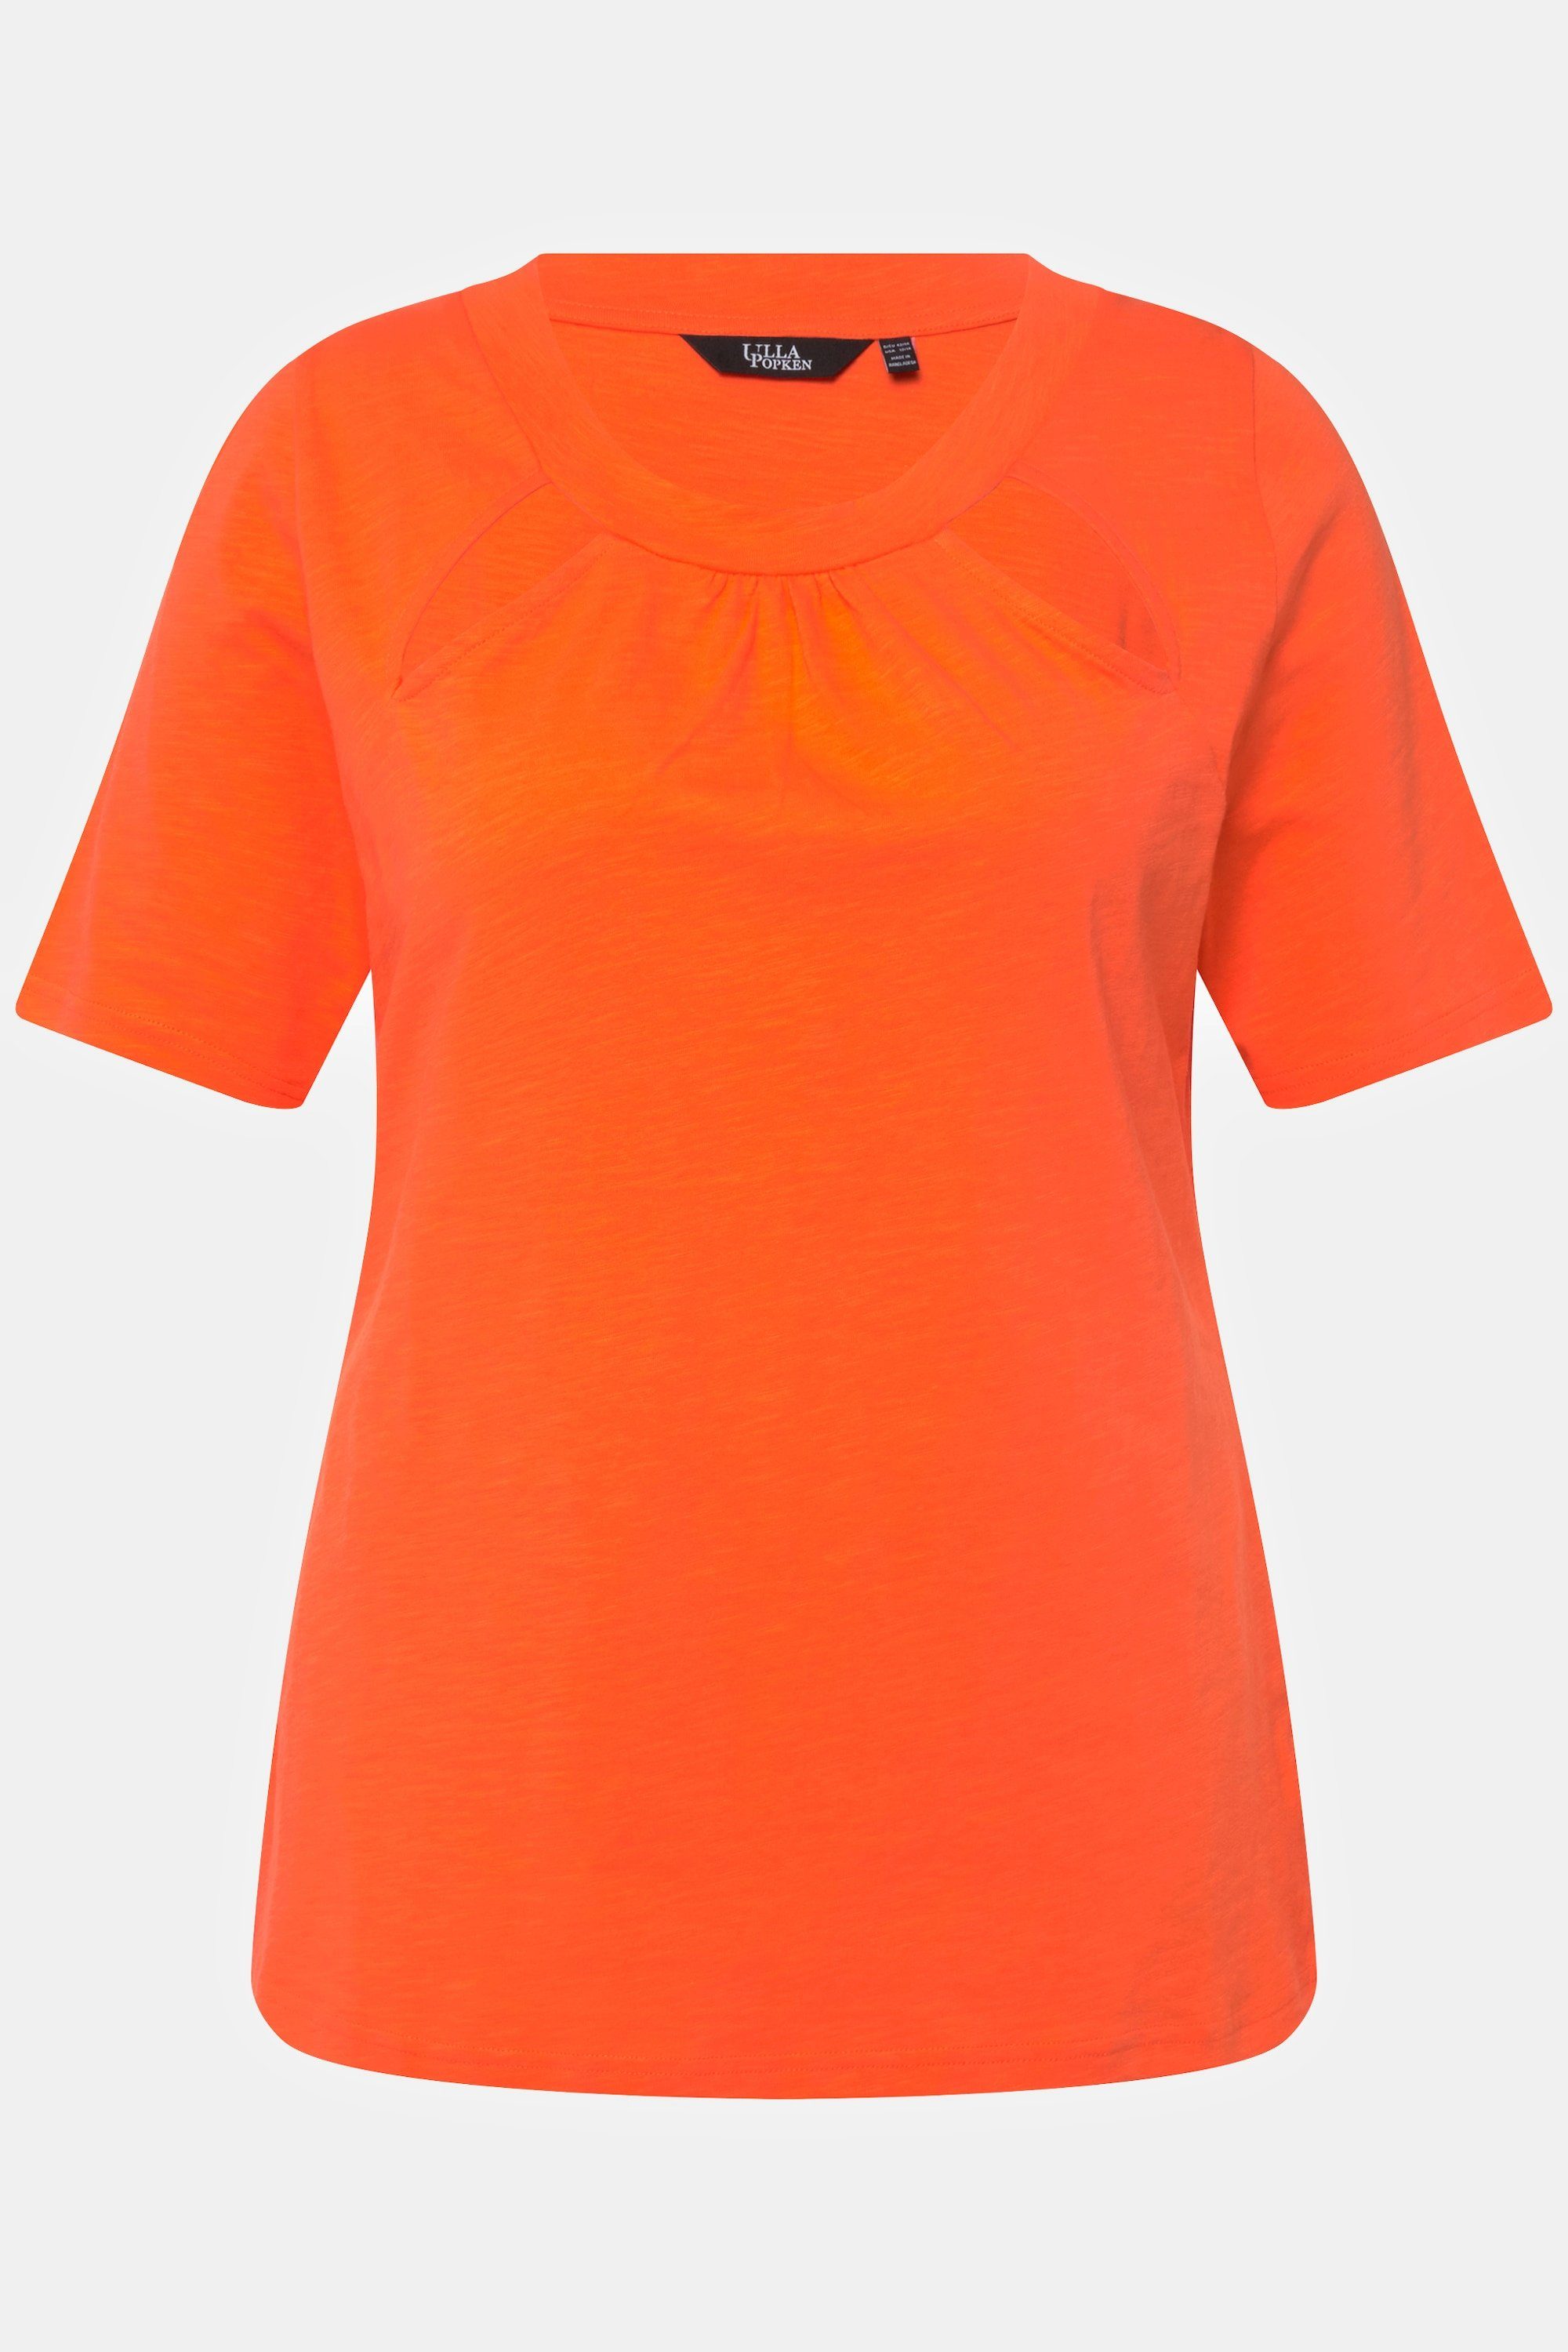 Cut-Outs Kräuselung Popken T-Shirt Rundhals Halbarm mandarine Slim Ulla Rundhalsshirt